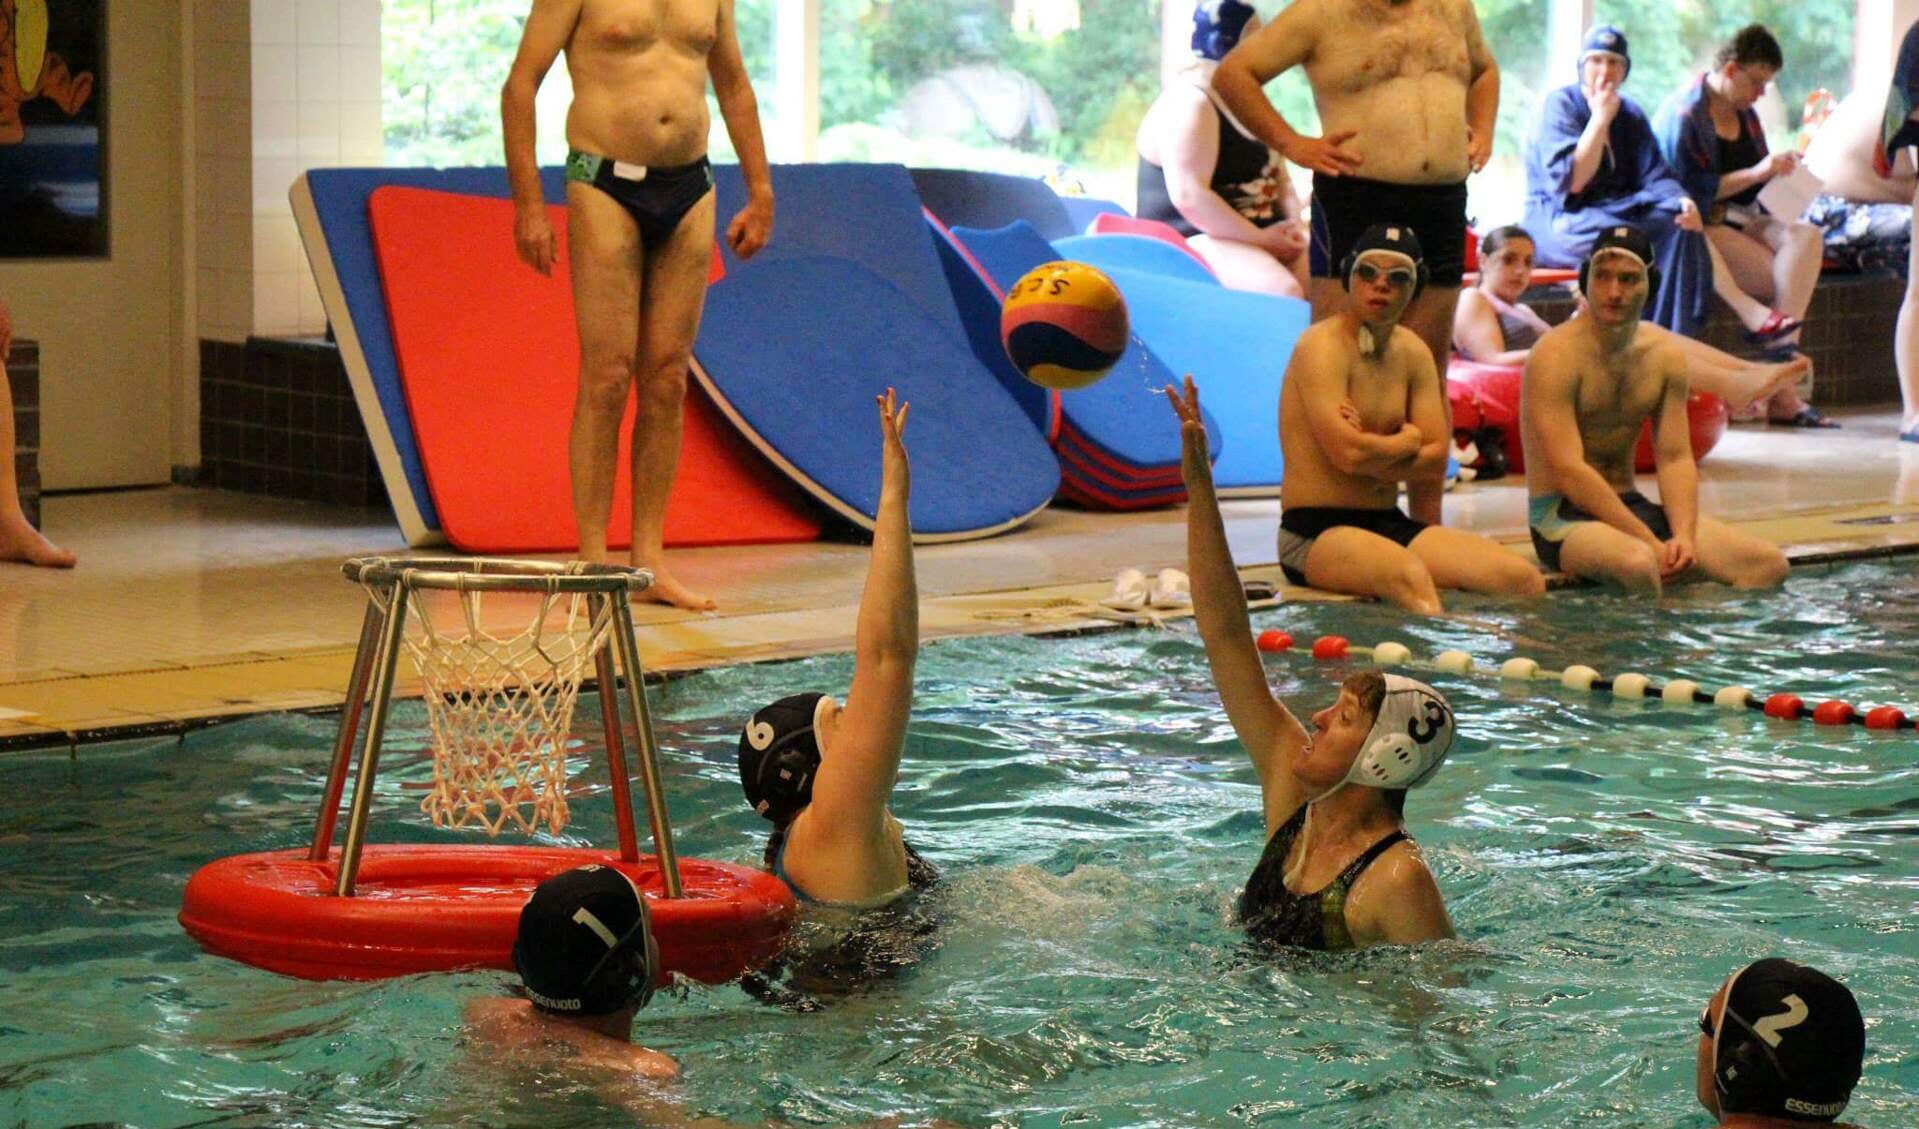 Waterbasketbal is één van de sporten bij Gesposs.